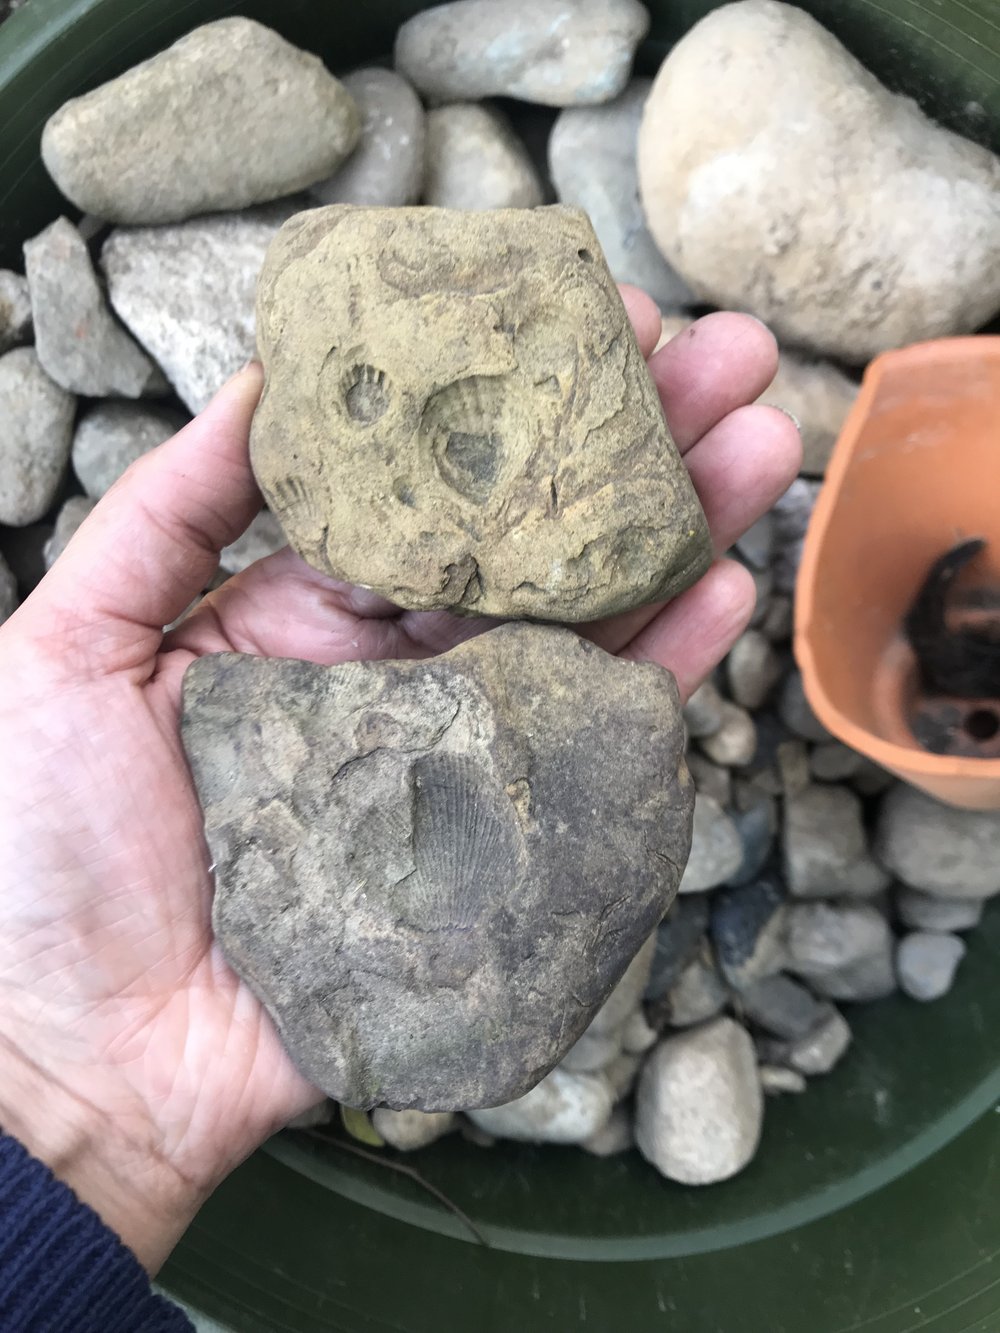 Fossilized Rocks